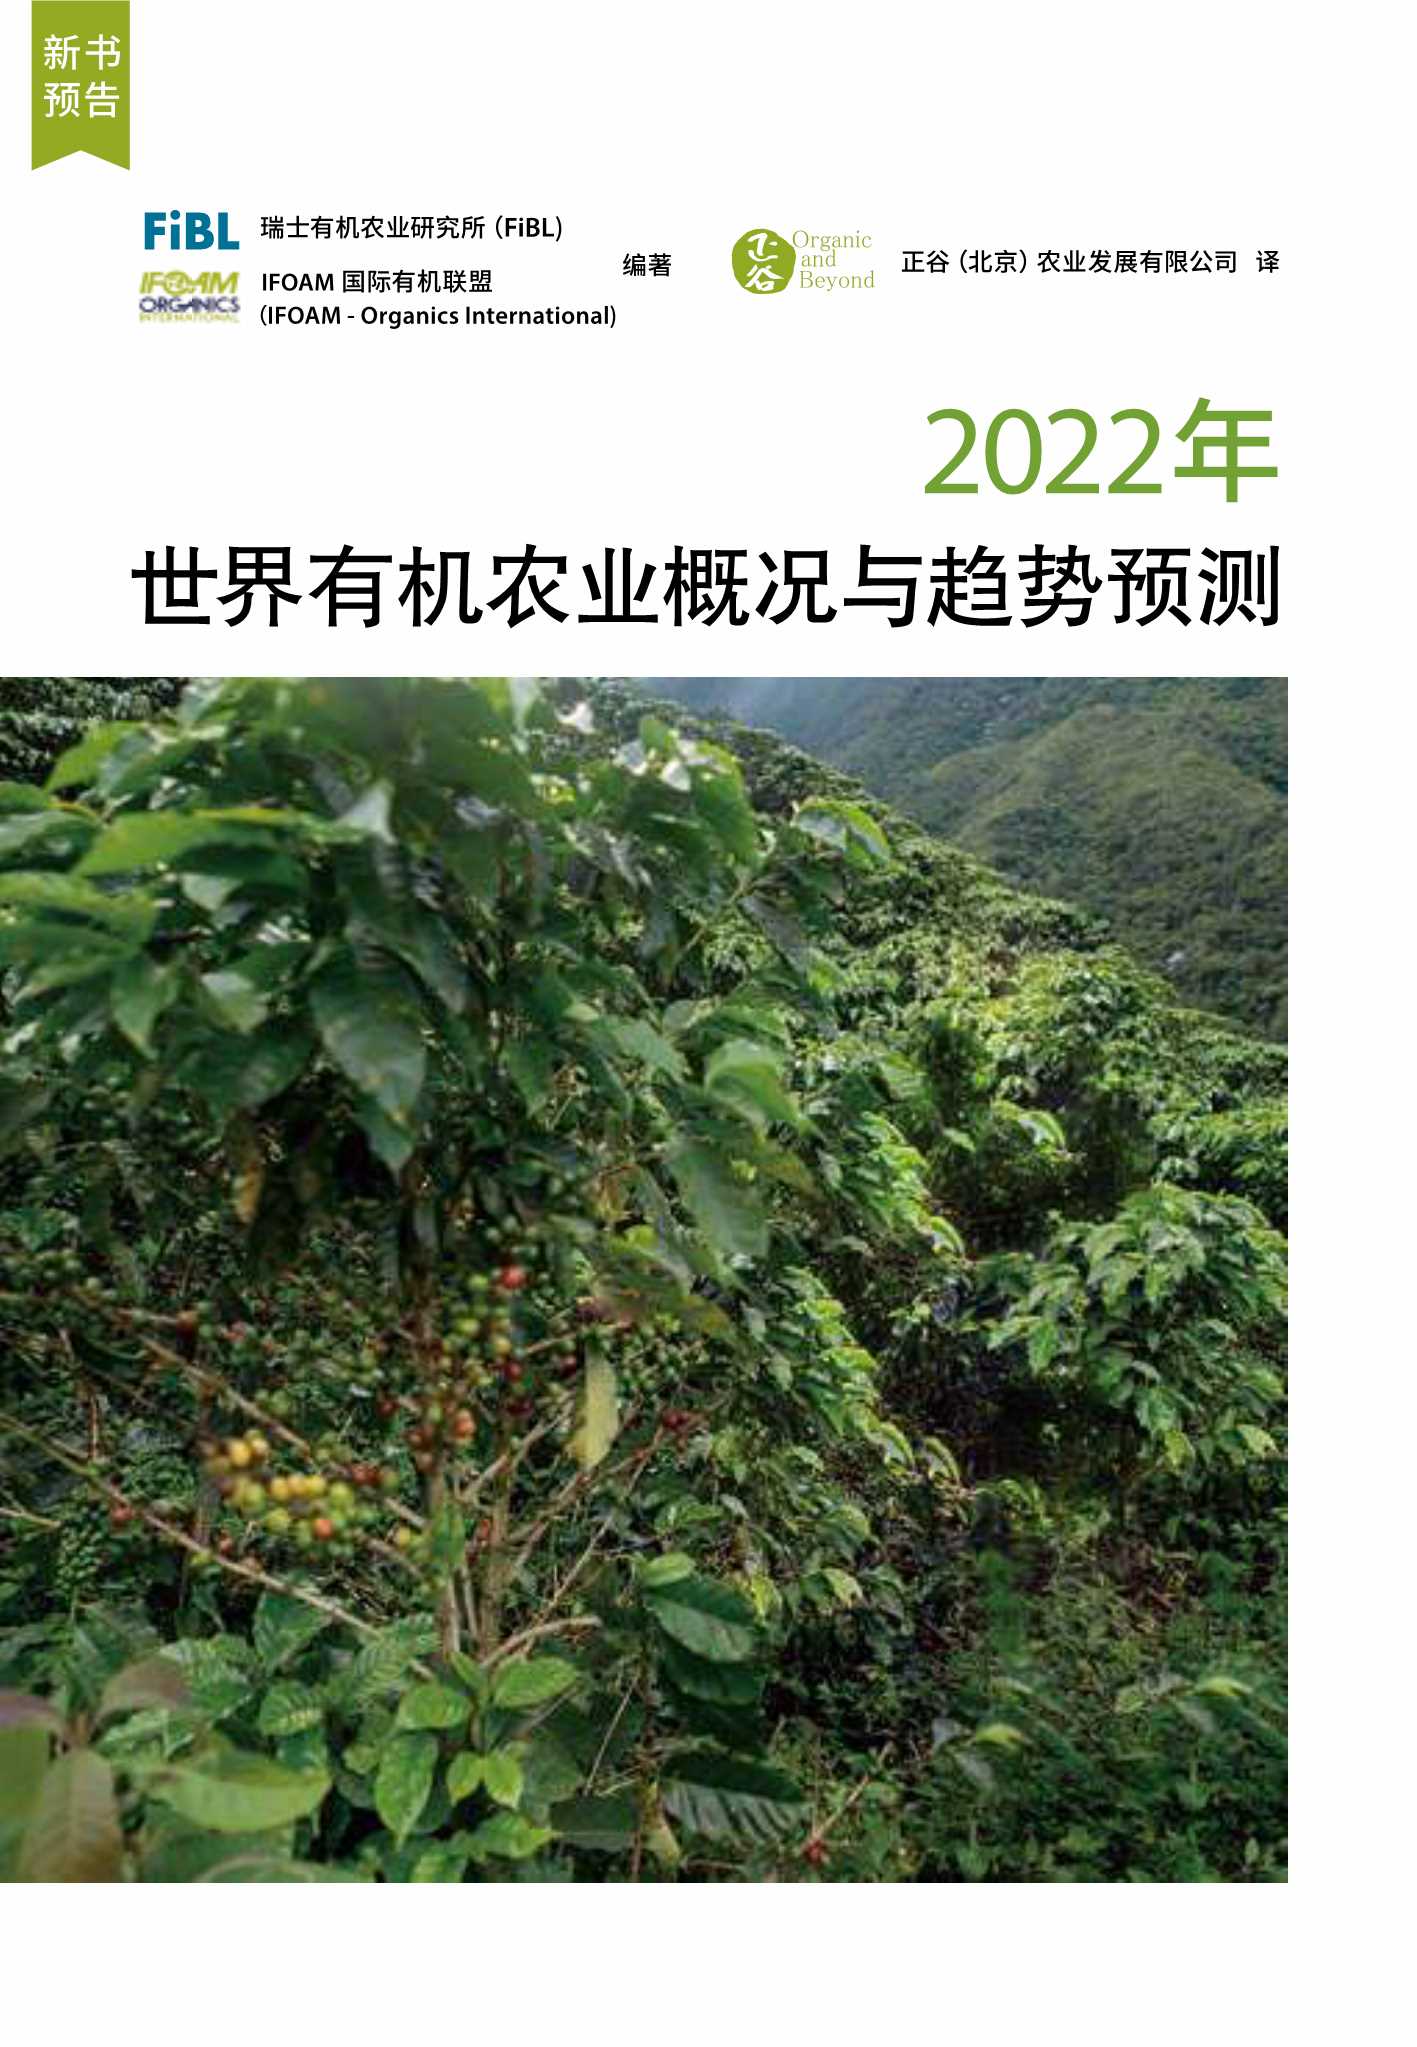 2022年世界有机农业概况与趋势预测预告-2022.04-16页